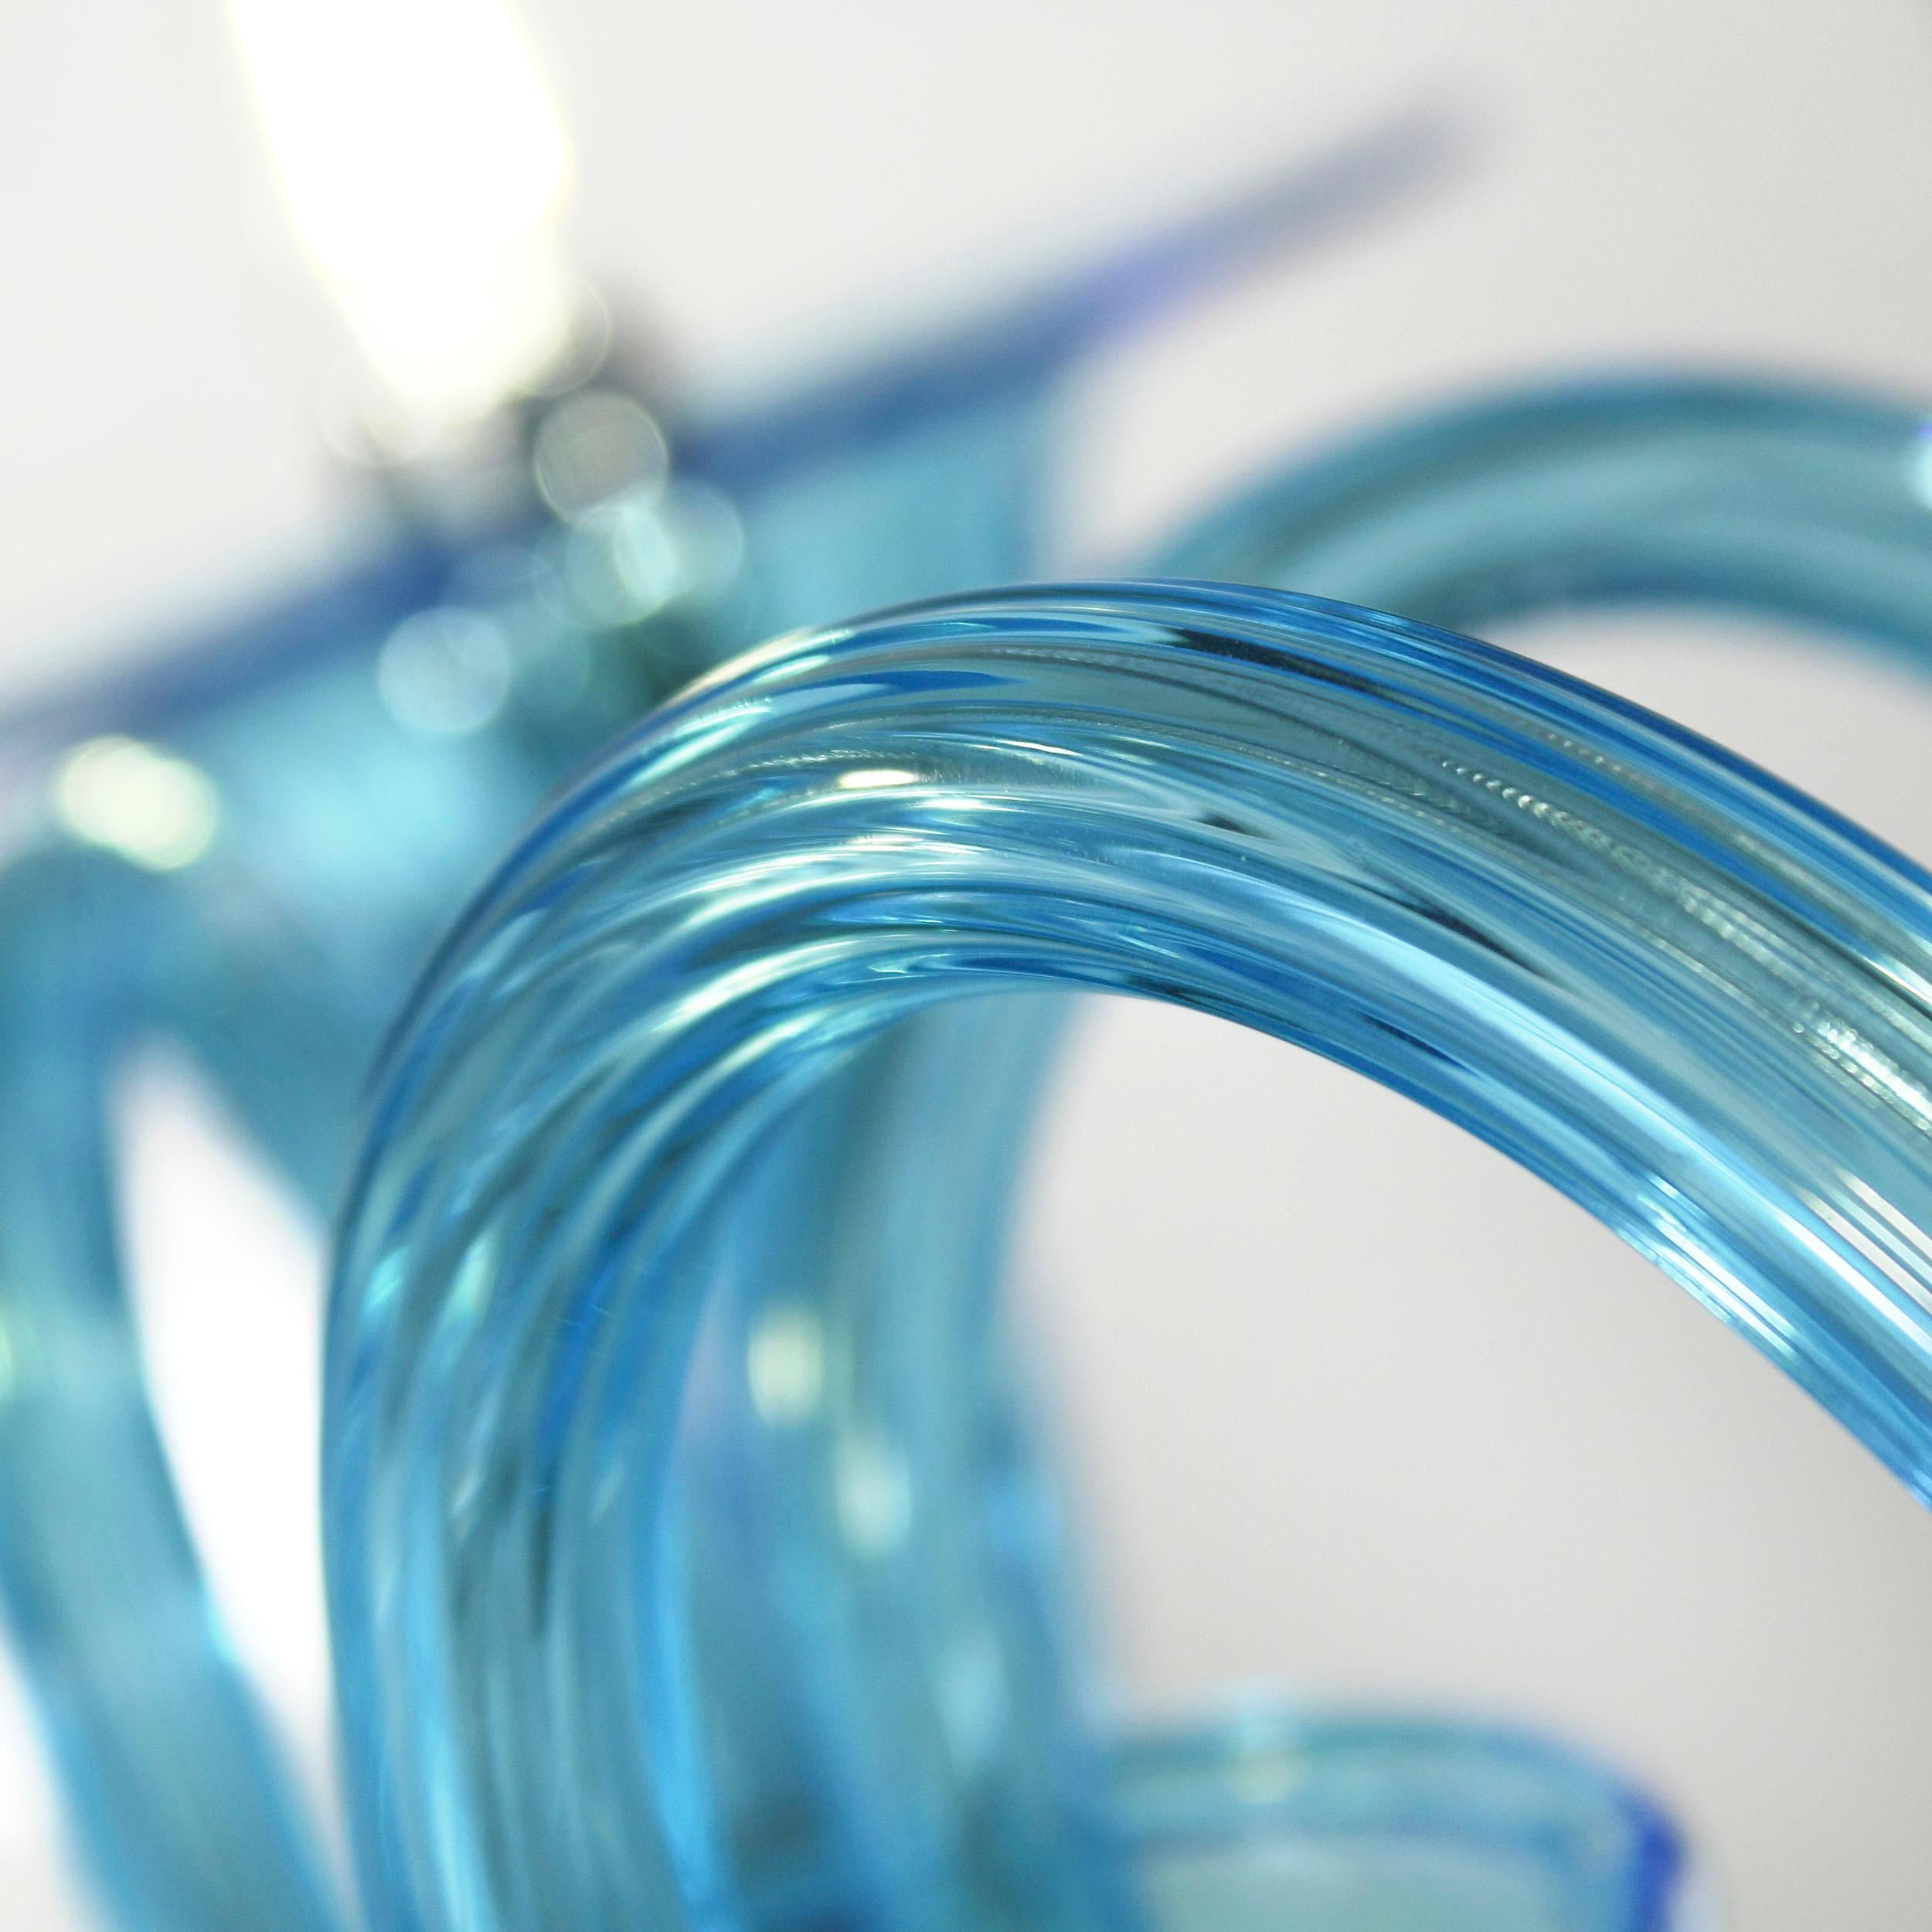 Simplicissimus 360 Kronleuchter mit 6 Lichtern aus hellblauem Kunstglas von Multiforme
Diese Collection'S aus Murano-Glas zeichnet sich durch ihre außergewöhnliche Schlichtheit aus. Es ist das Ergebnis einer Forschung, die auf die klassischen